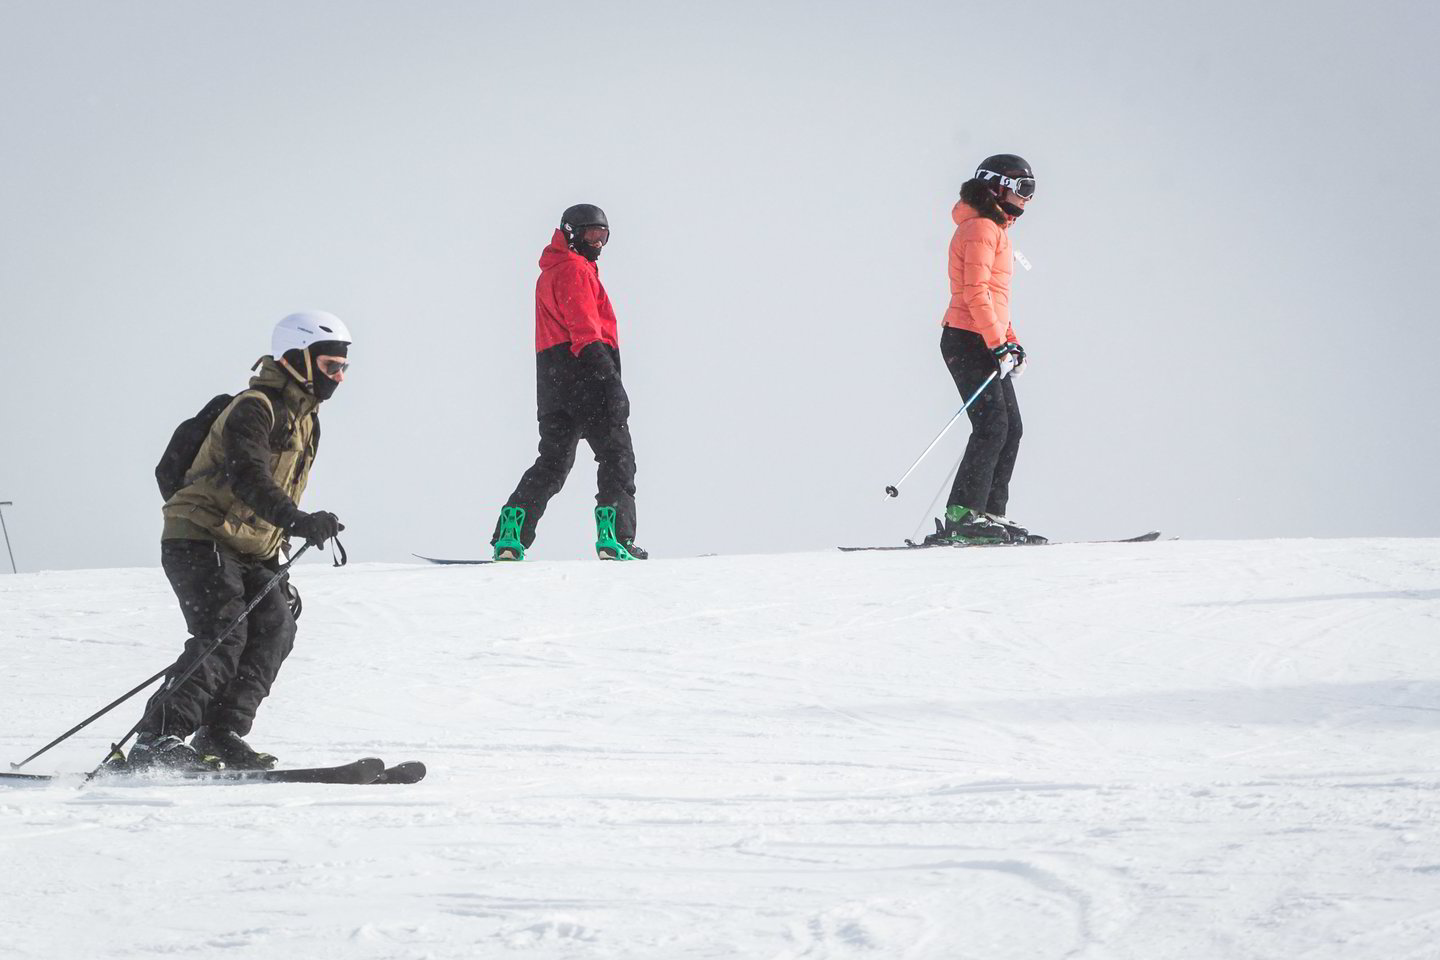  Nors paprastai vasario pabaigoje slidinėjimo sezonas Vilniuje baigaiasi, šiemet žiema iškrėtė pokštą. <br> M.Ambrazo nuotr. 